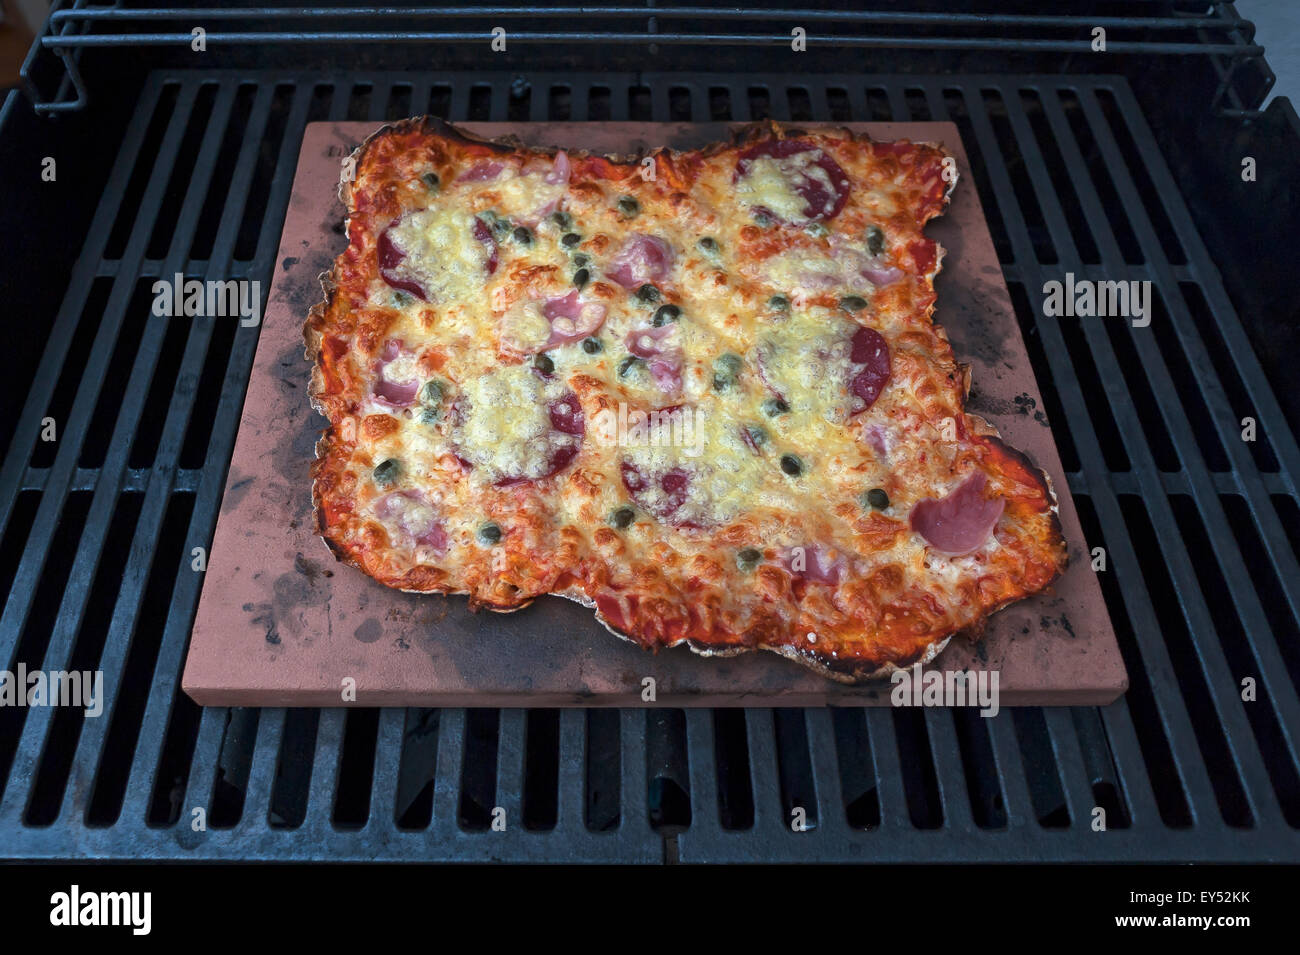 Des pizzas Speziale, tomates, jambon cuit, de salami et de fromage sur une pierre chaude dans un gril à gaz Banque D'Images